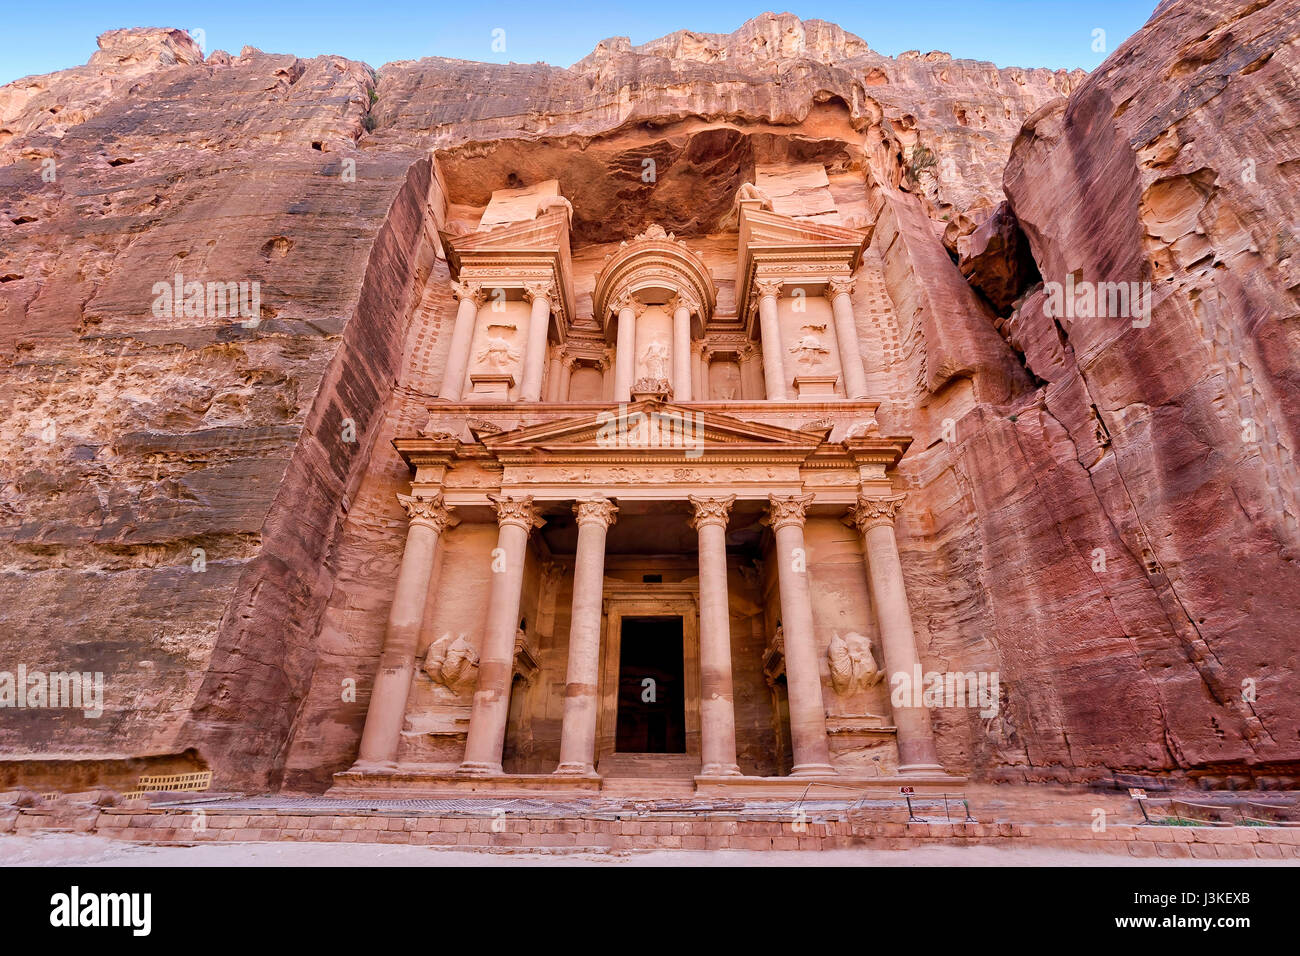 Vista frontal del "tesoro", uno de los templos más elaboradas en el árabe antiguo reino nabateo ciudad de Petra, Jordania. Foto de stock